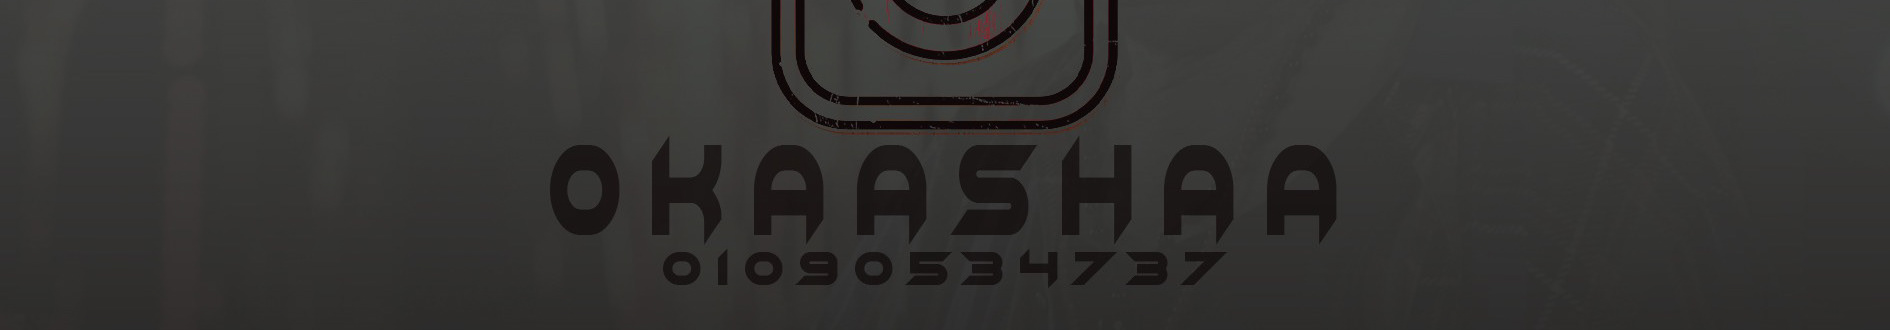 ali okasha's profile banner